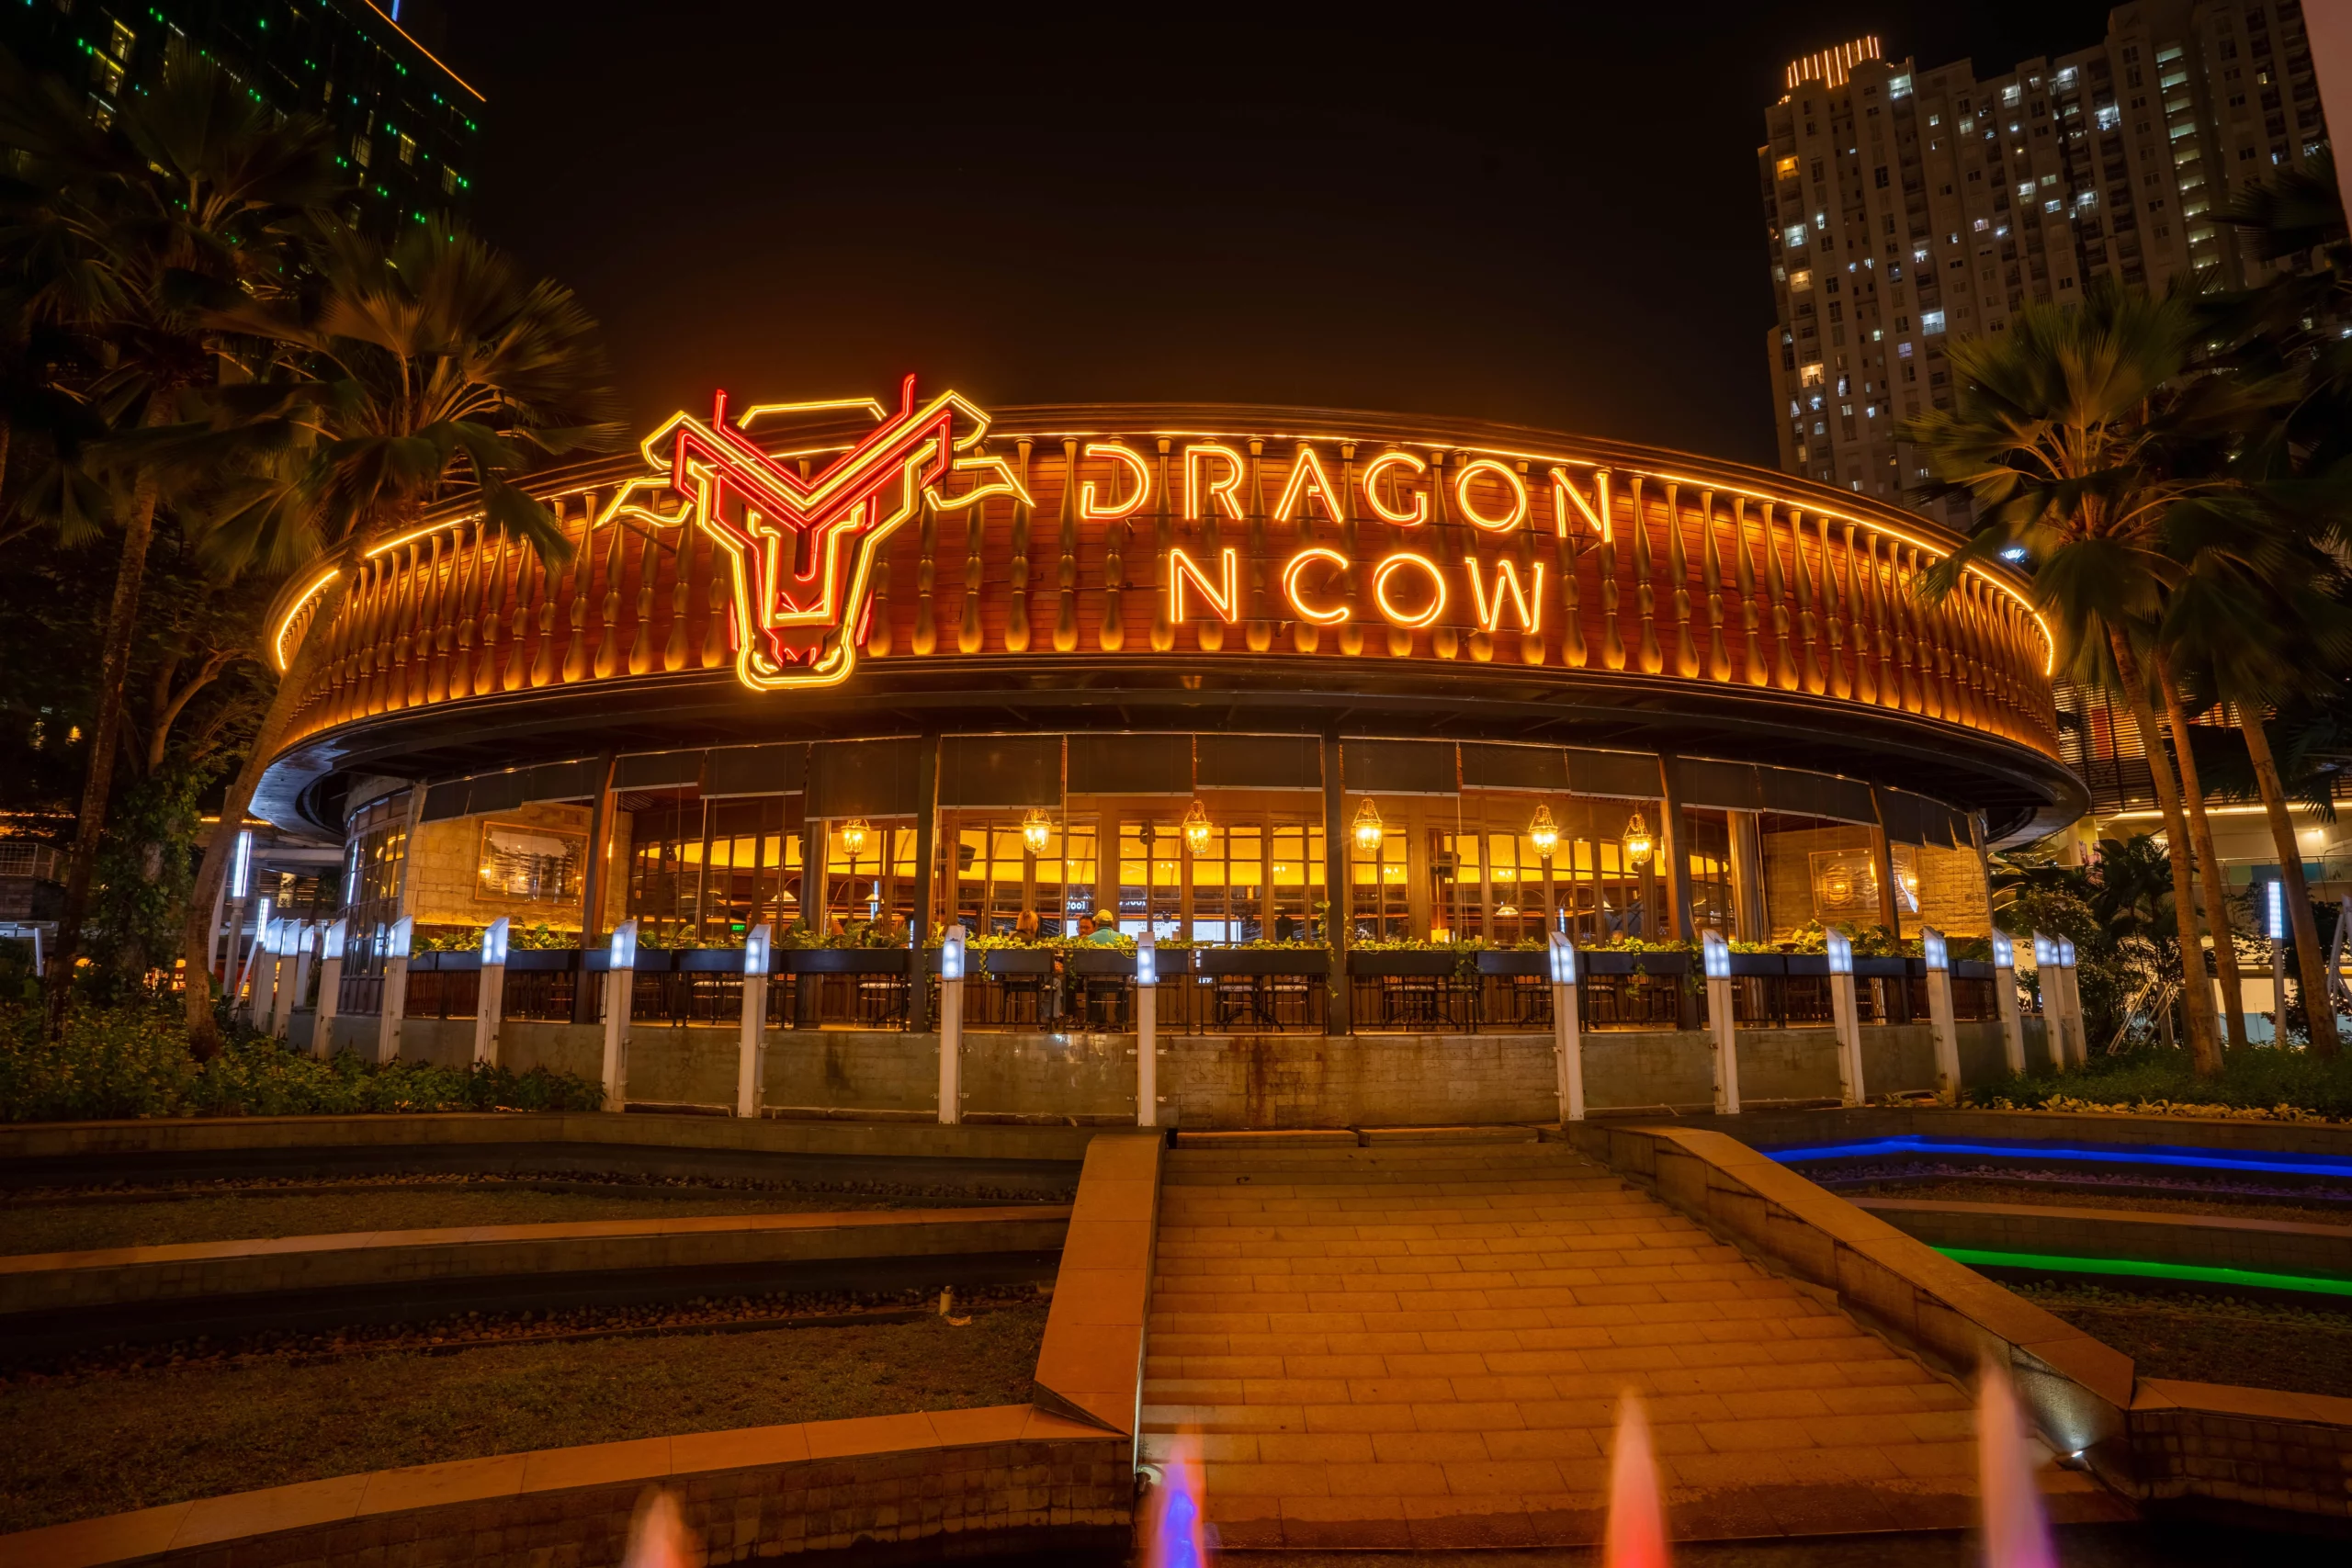 Dragon N Cow, Steakhouse Terbaik di Jakarta untuk Menikmati Steak Premium dengan Suasana Mewah